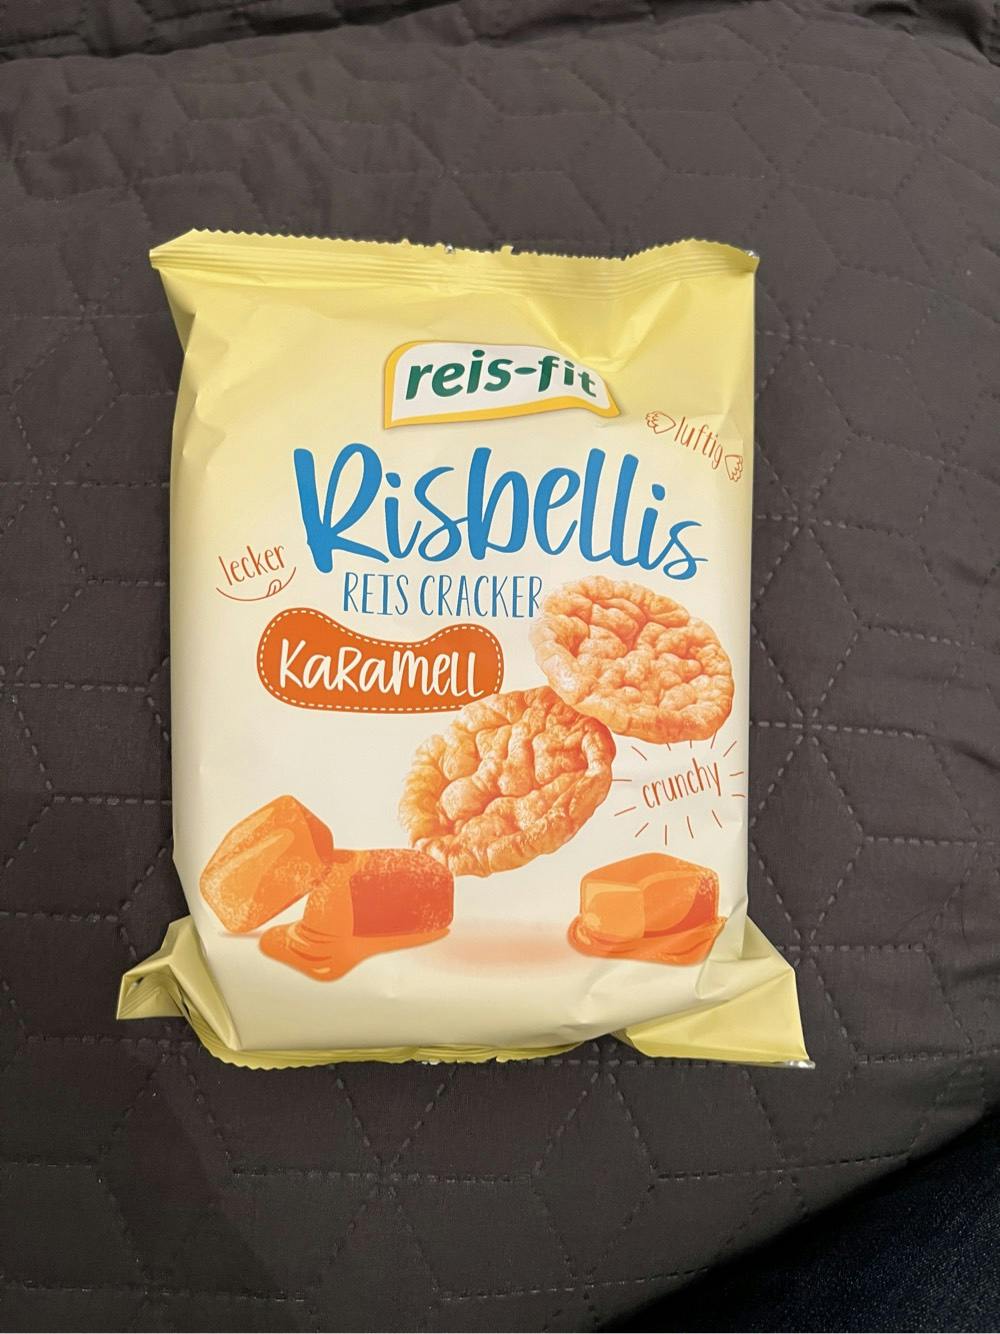 karamel, Reis-fit risbellis Riskiks Noba med |